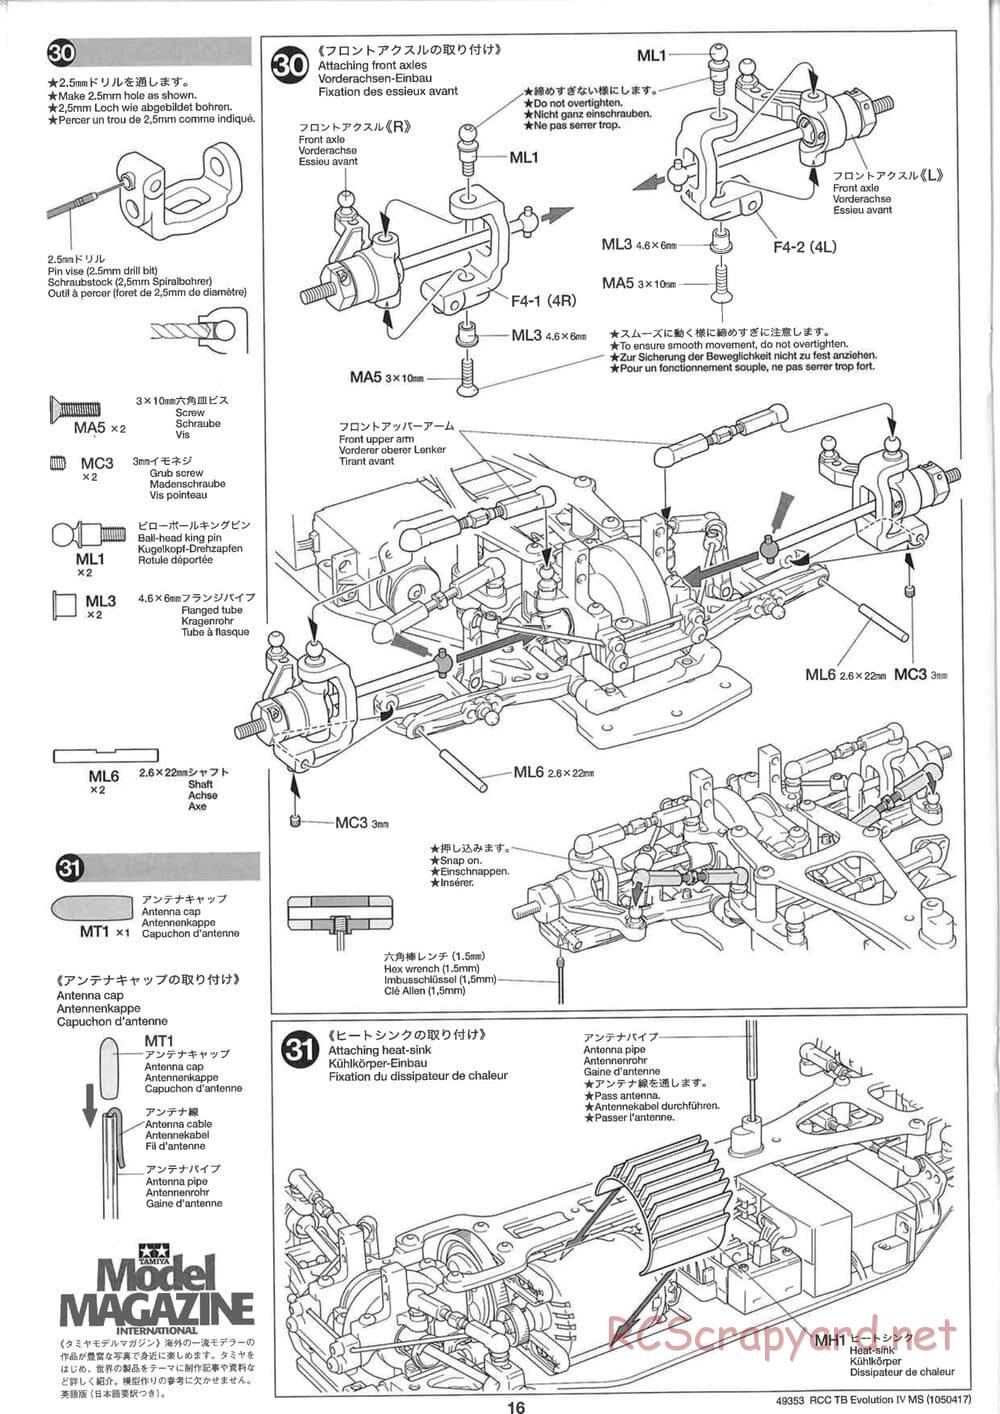 Tamiya - TB Evolution IV MS Chassis - Manual - Page 16